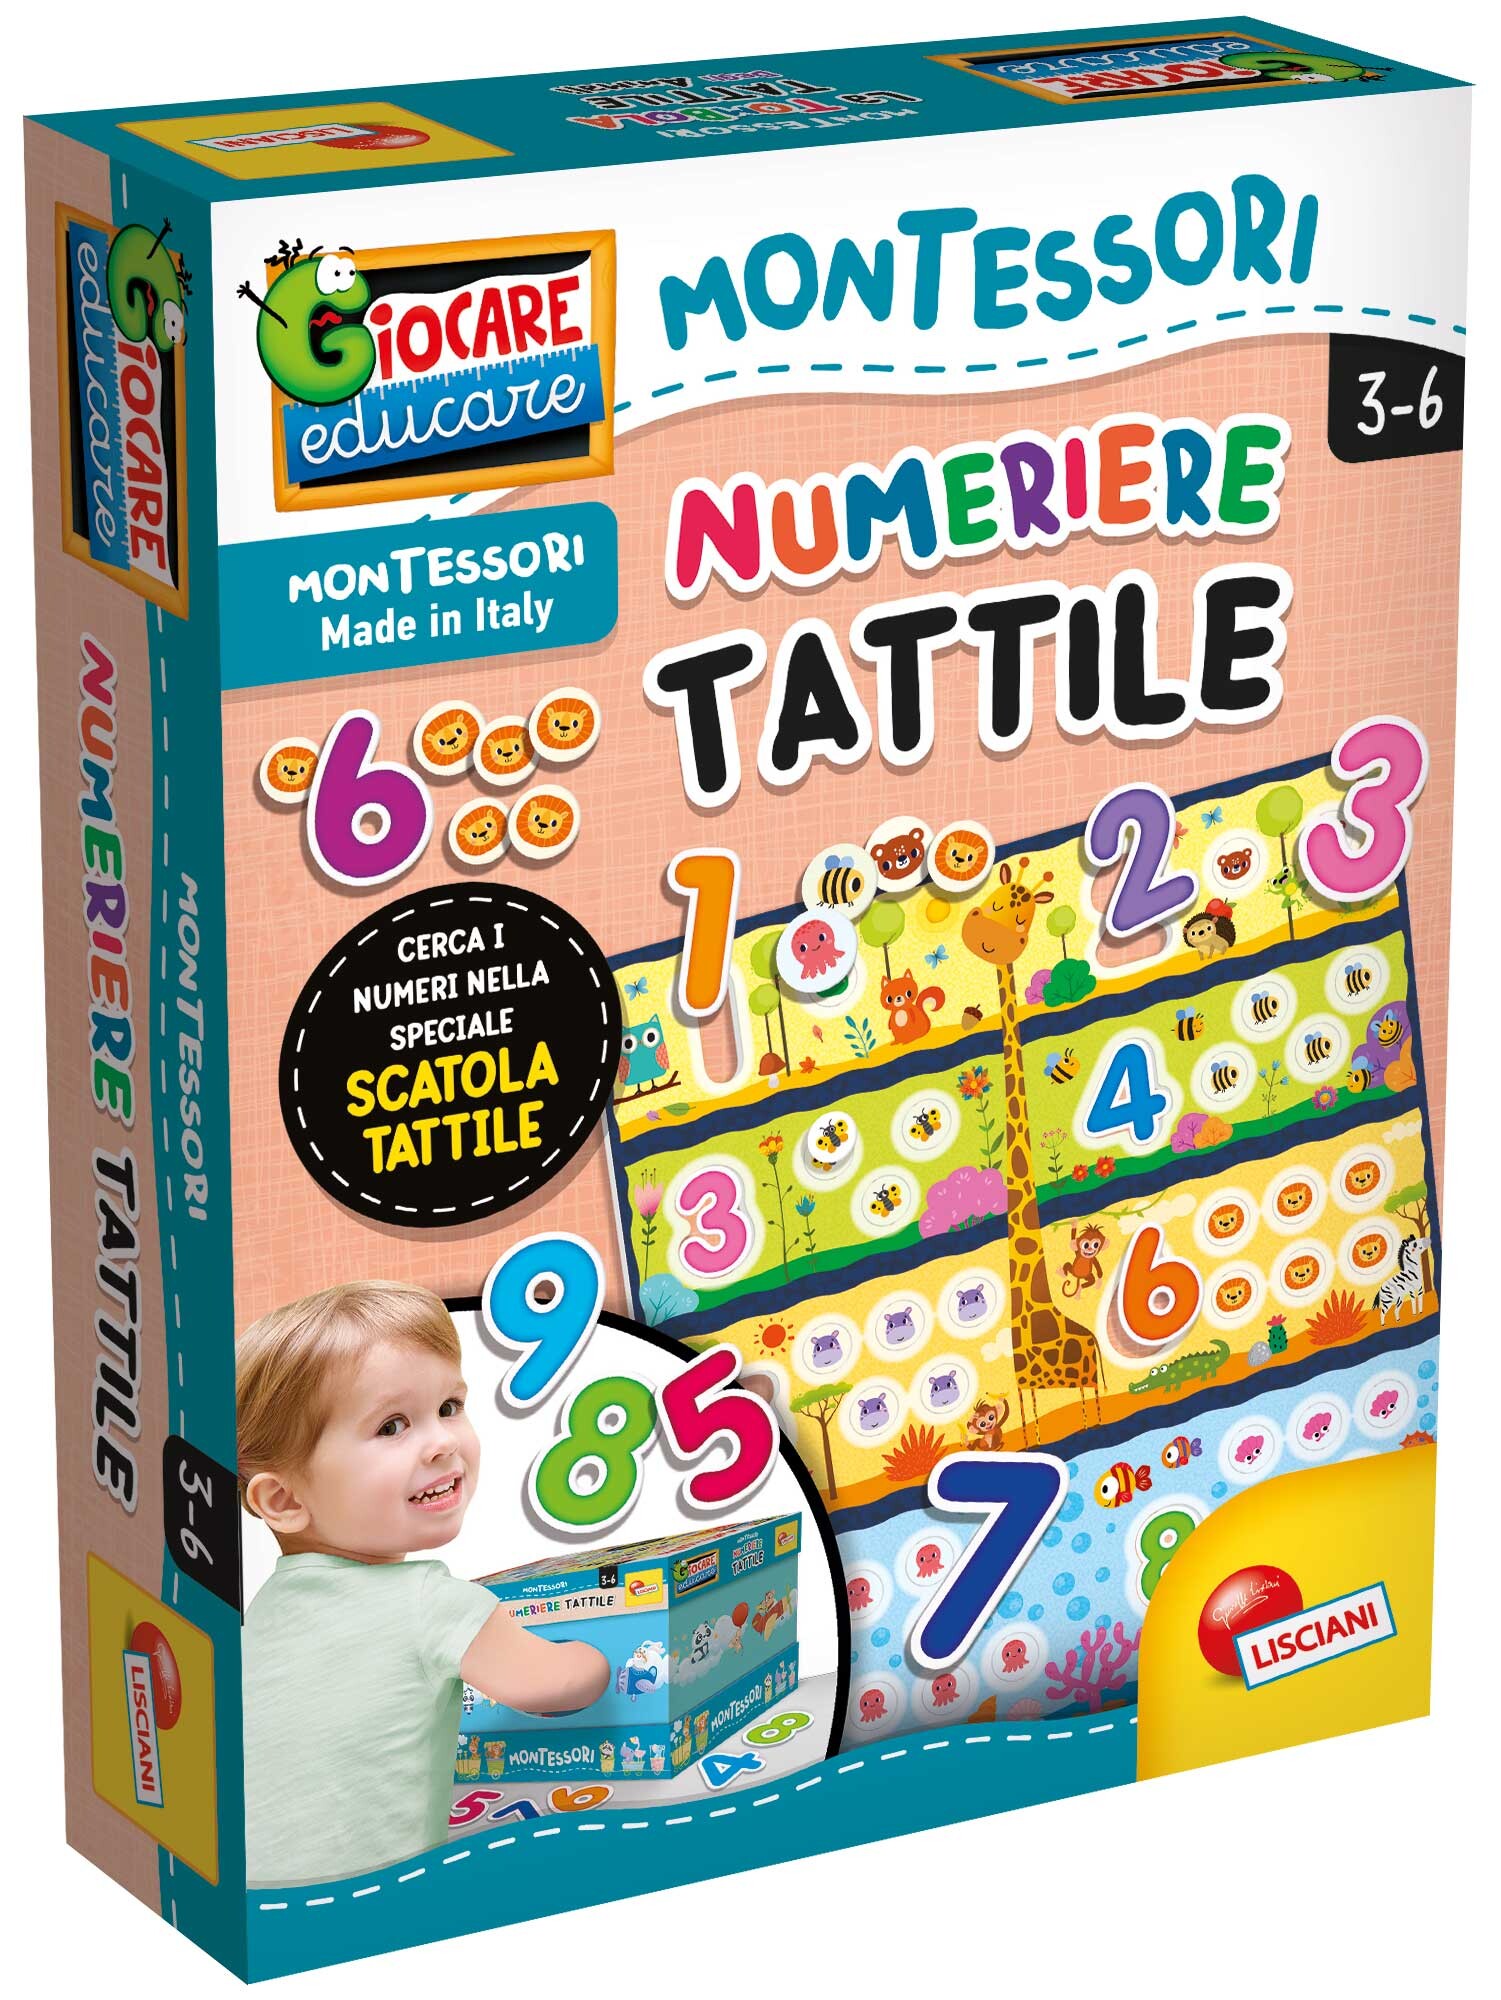 Montessori numeriere tattile - LISCIANI